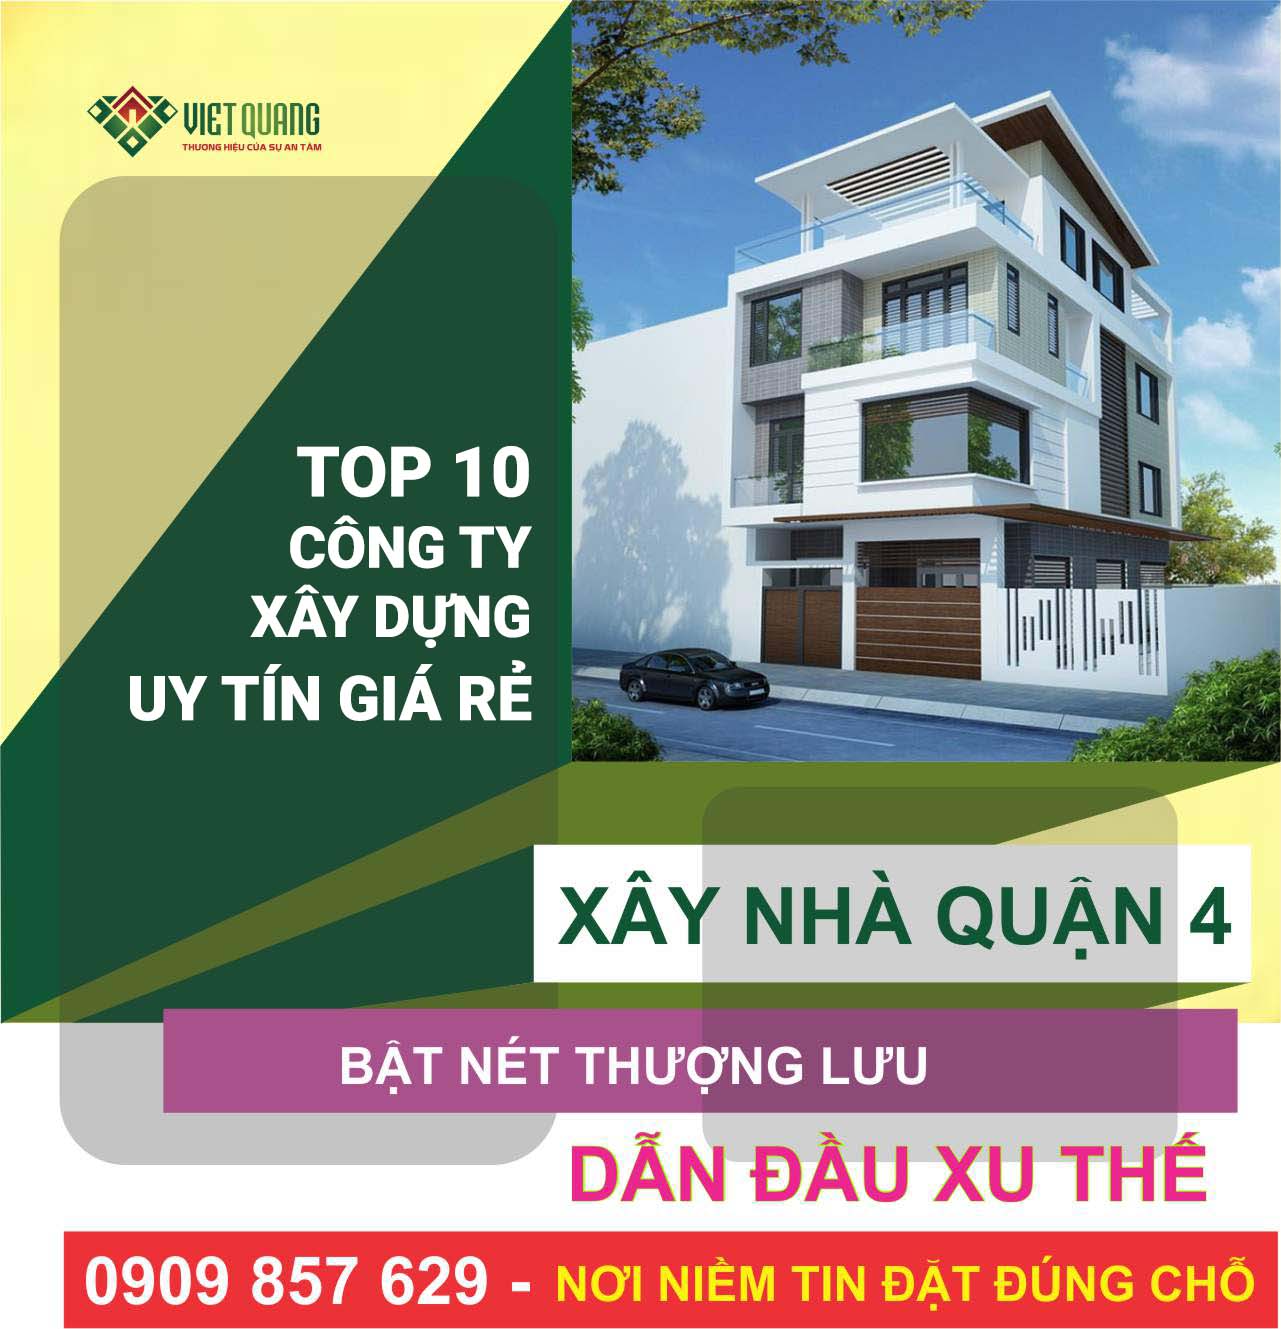 Việt Quang Group TOP 10 công ty xây dựng nhà trọn gói uy tín giá rẻ tại Quận 4